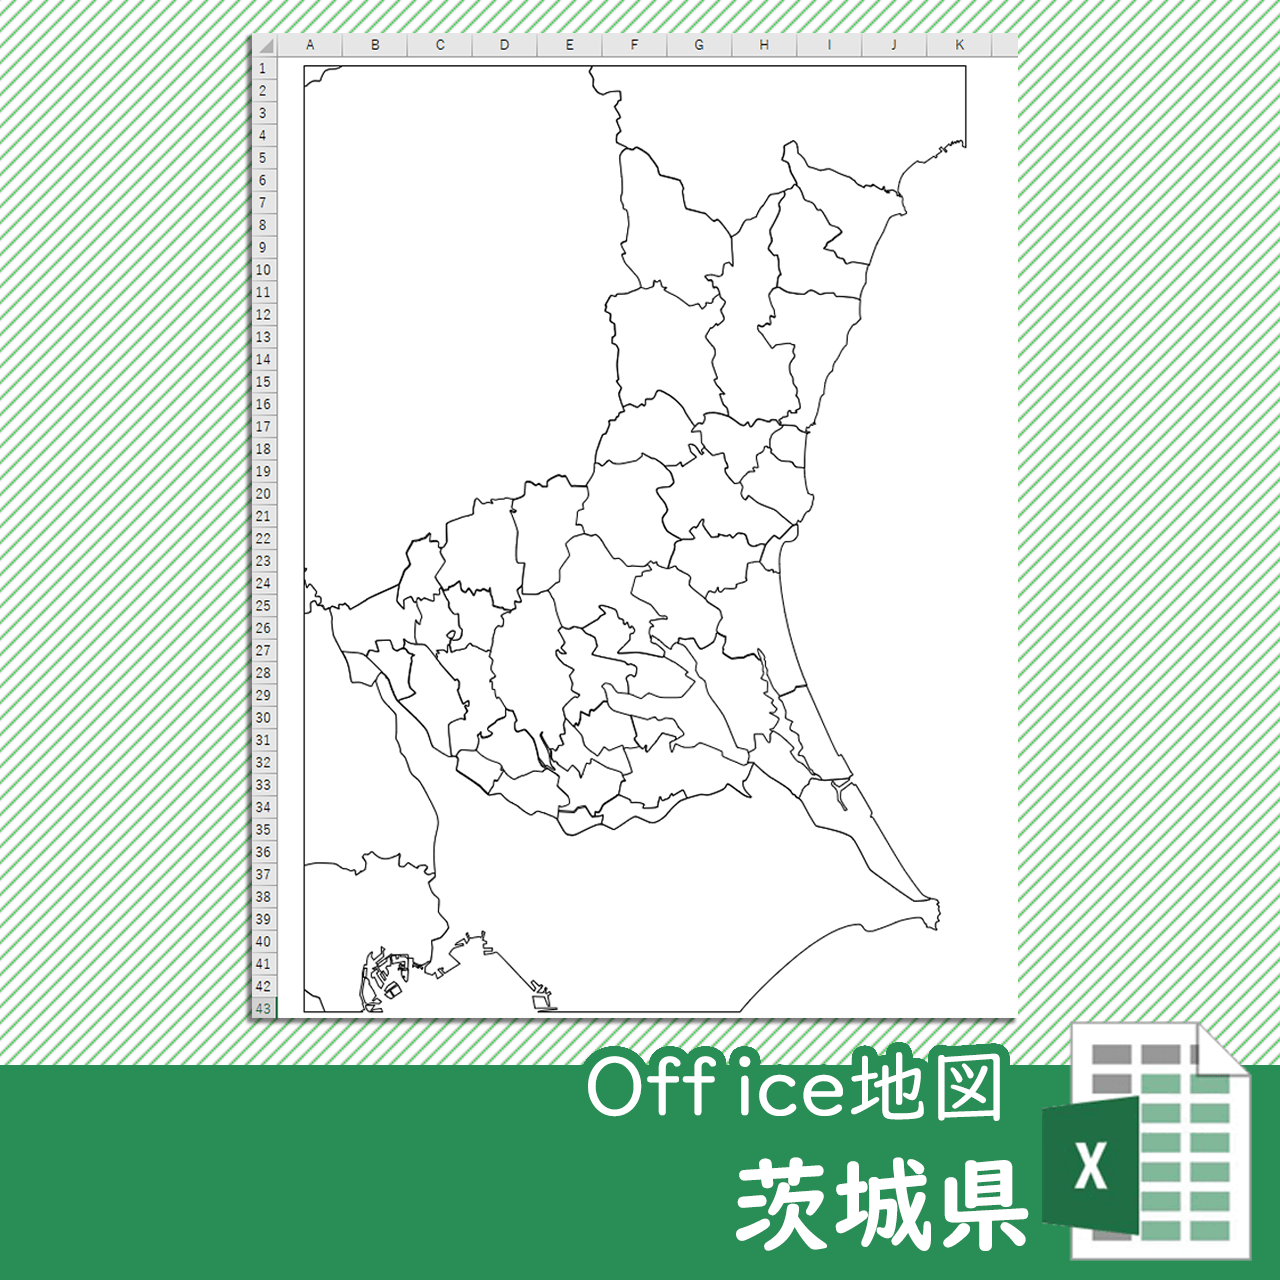 茨城県のoffice地図